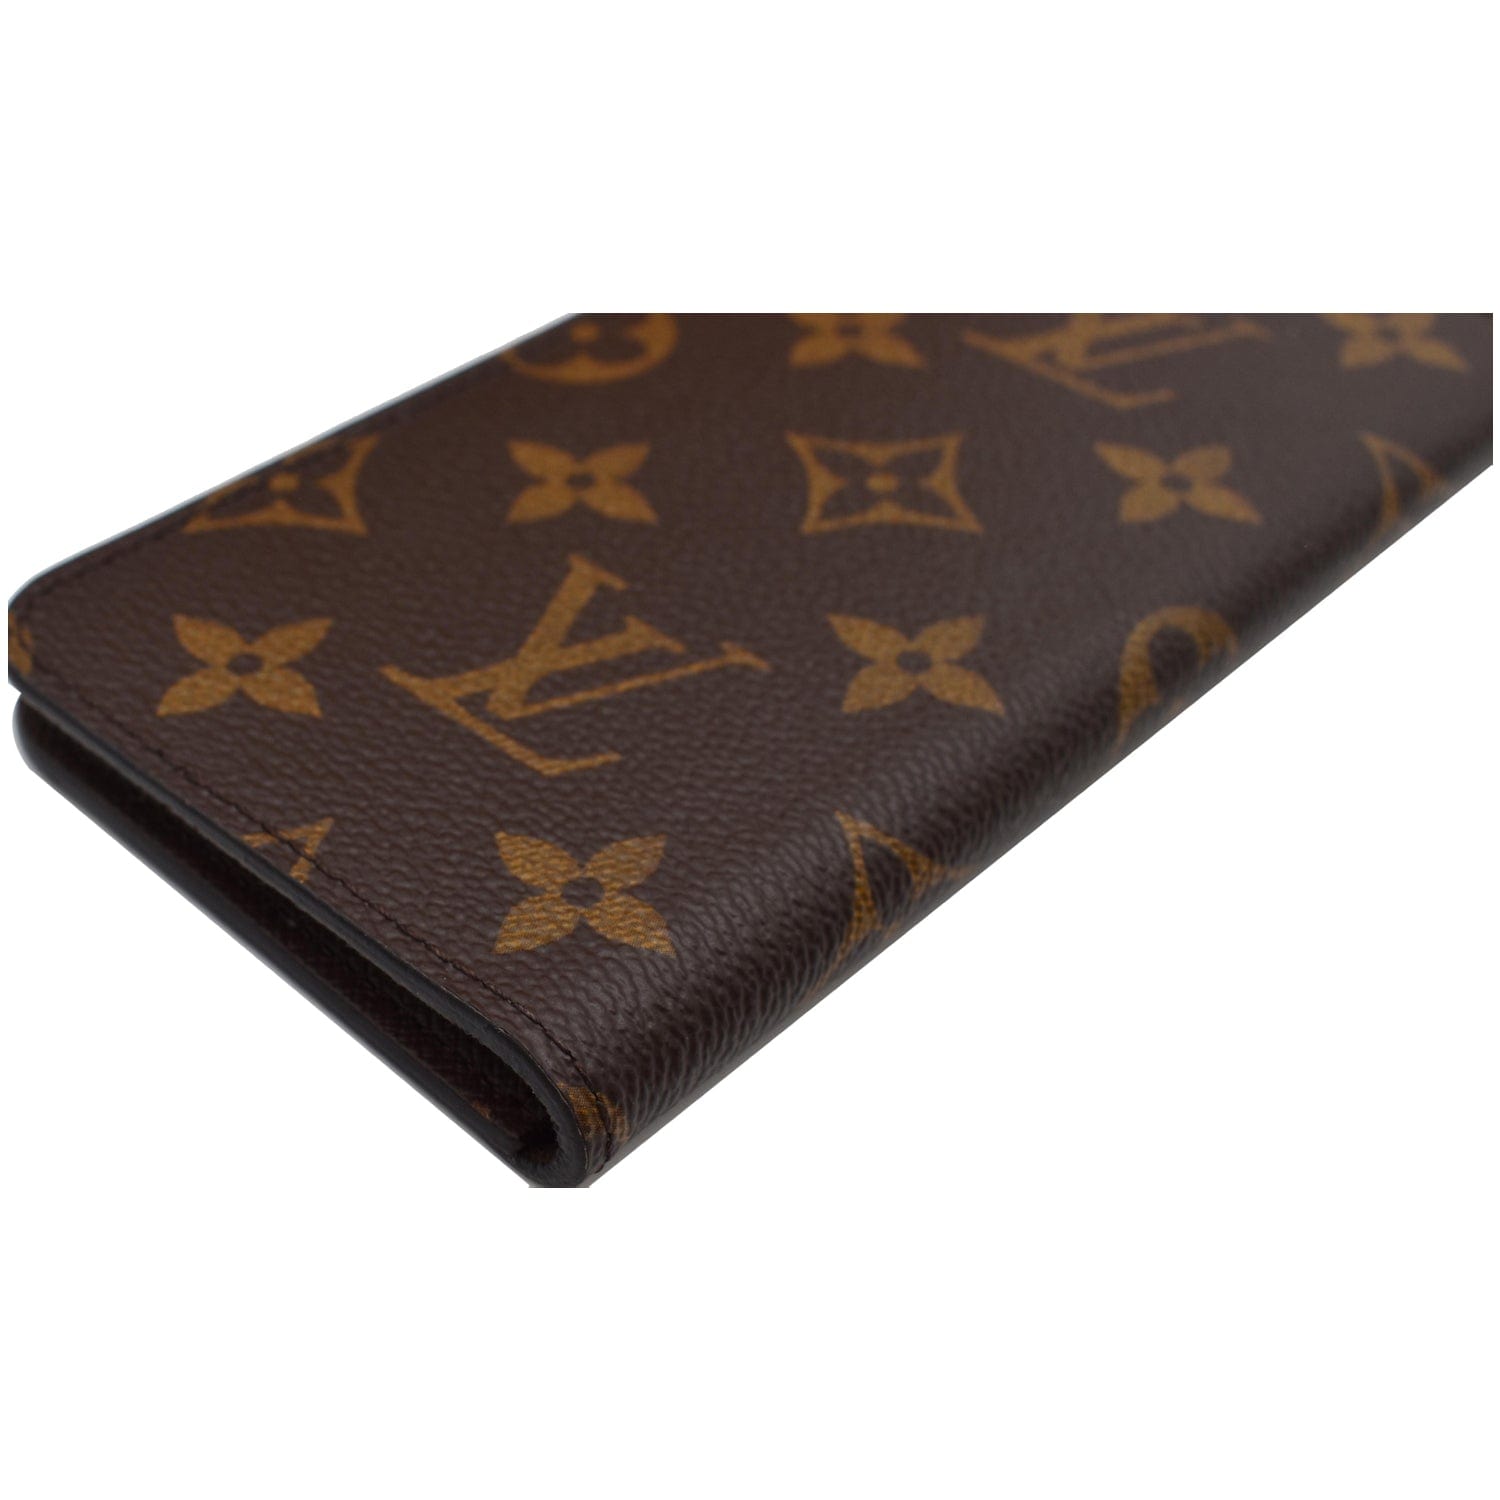 Authentic Louis Vuitton LV Monogram Folio iPhone 8 Case Brown Phone Case